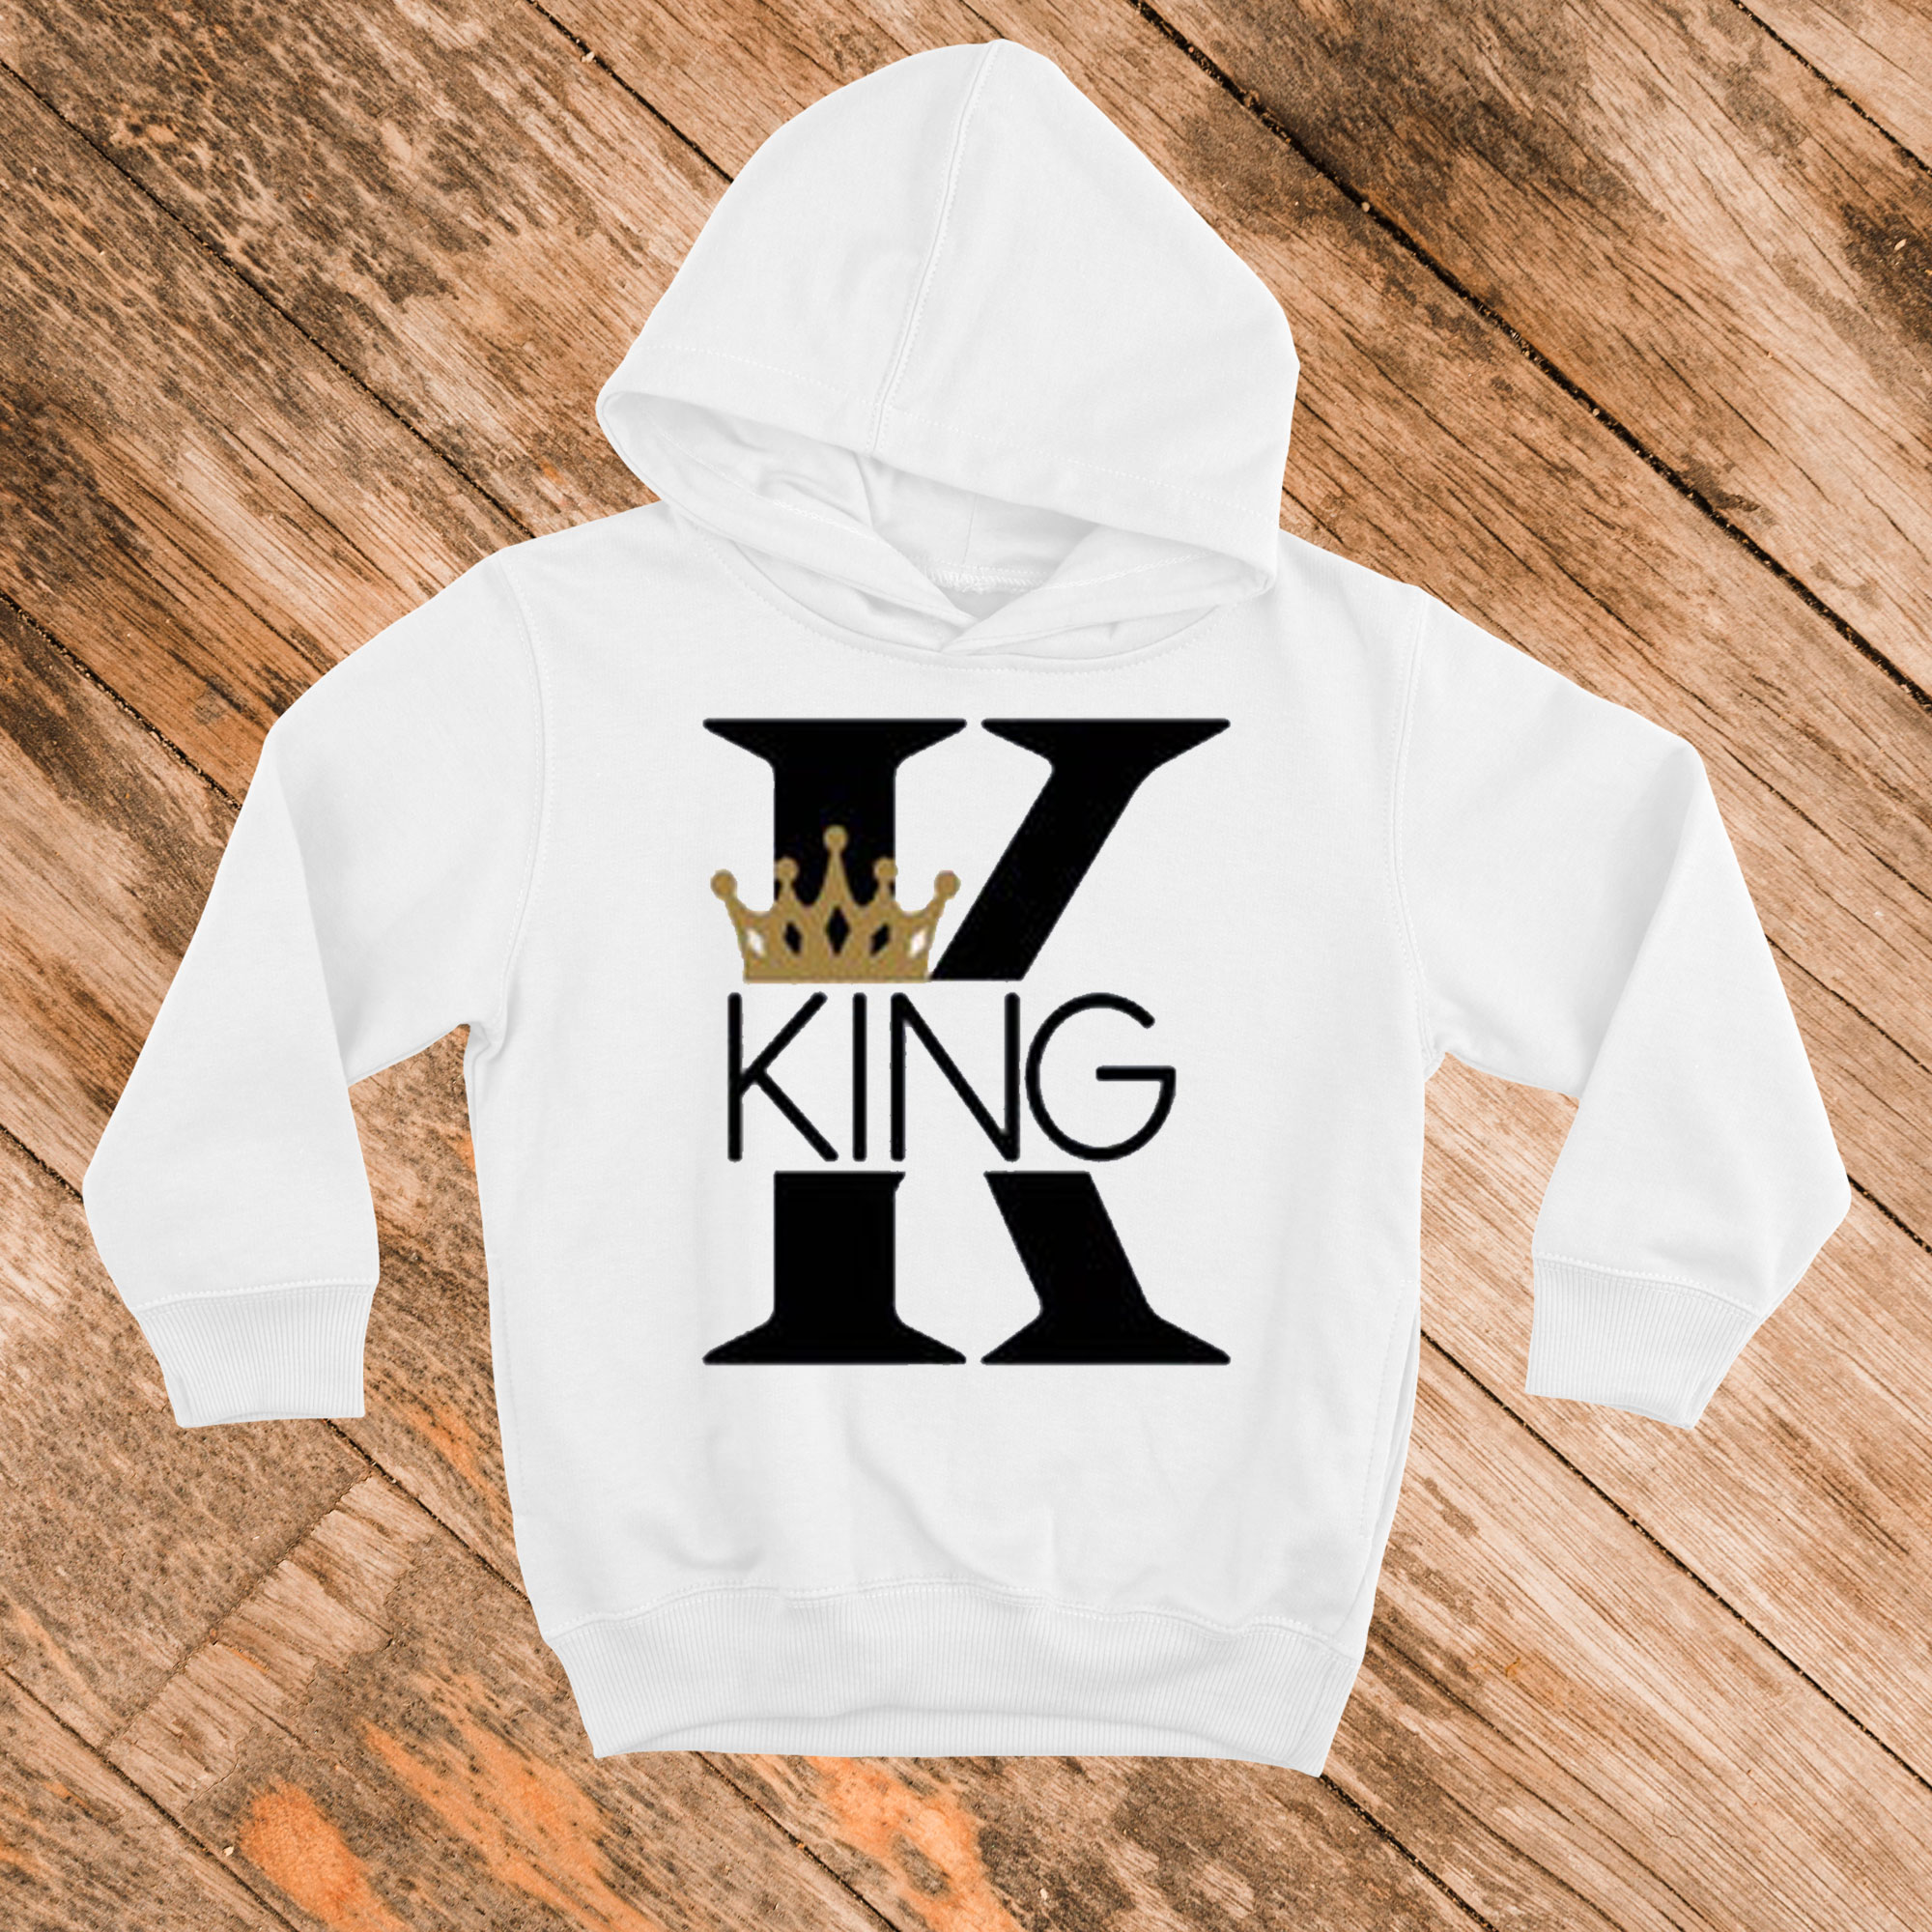 King queen hoodies